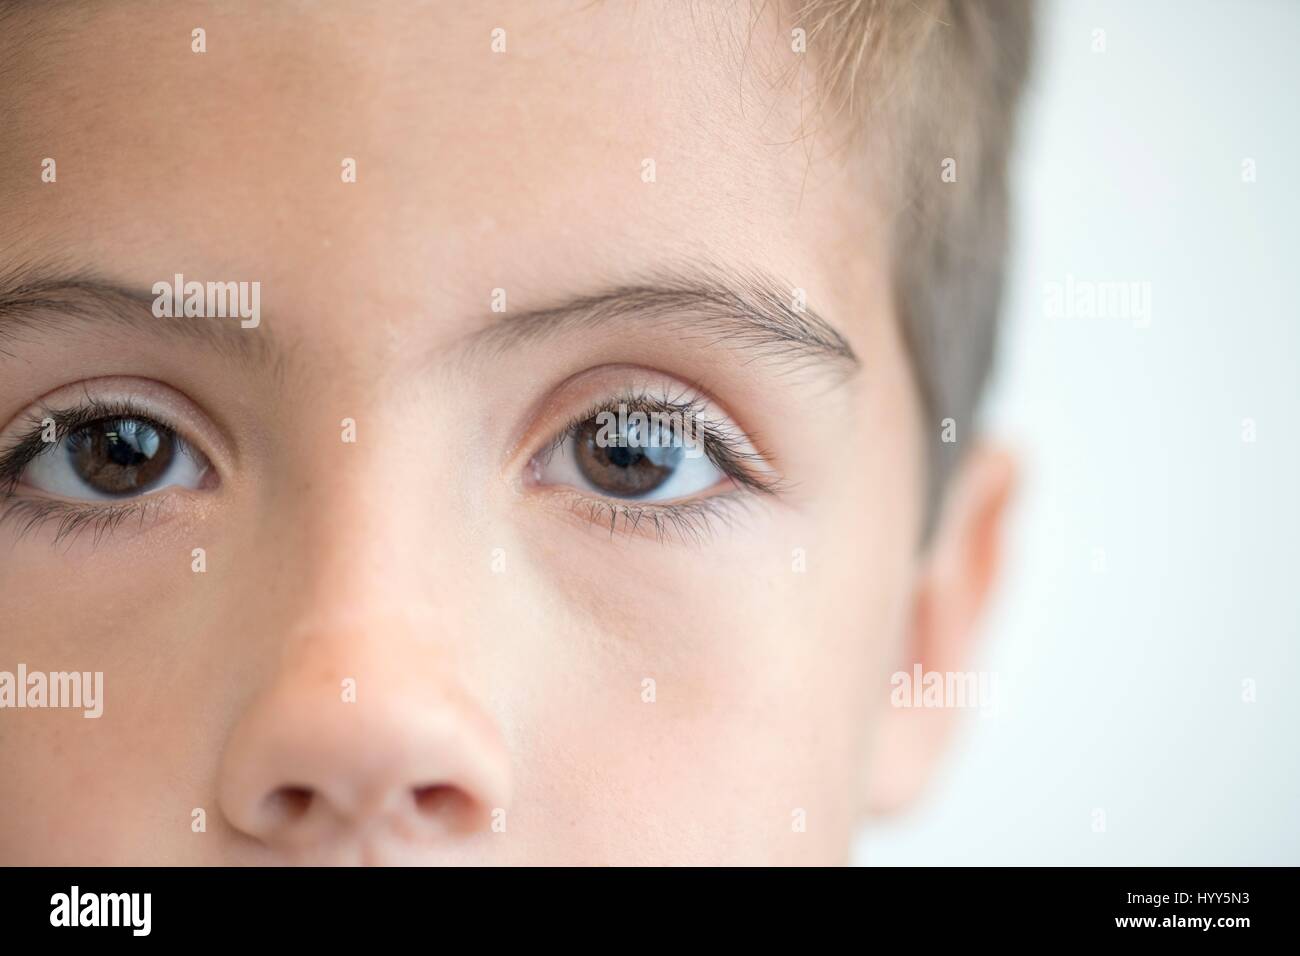 Niño con ojos marrones, cerca de retrato. Foto de stock